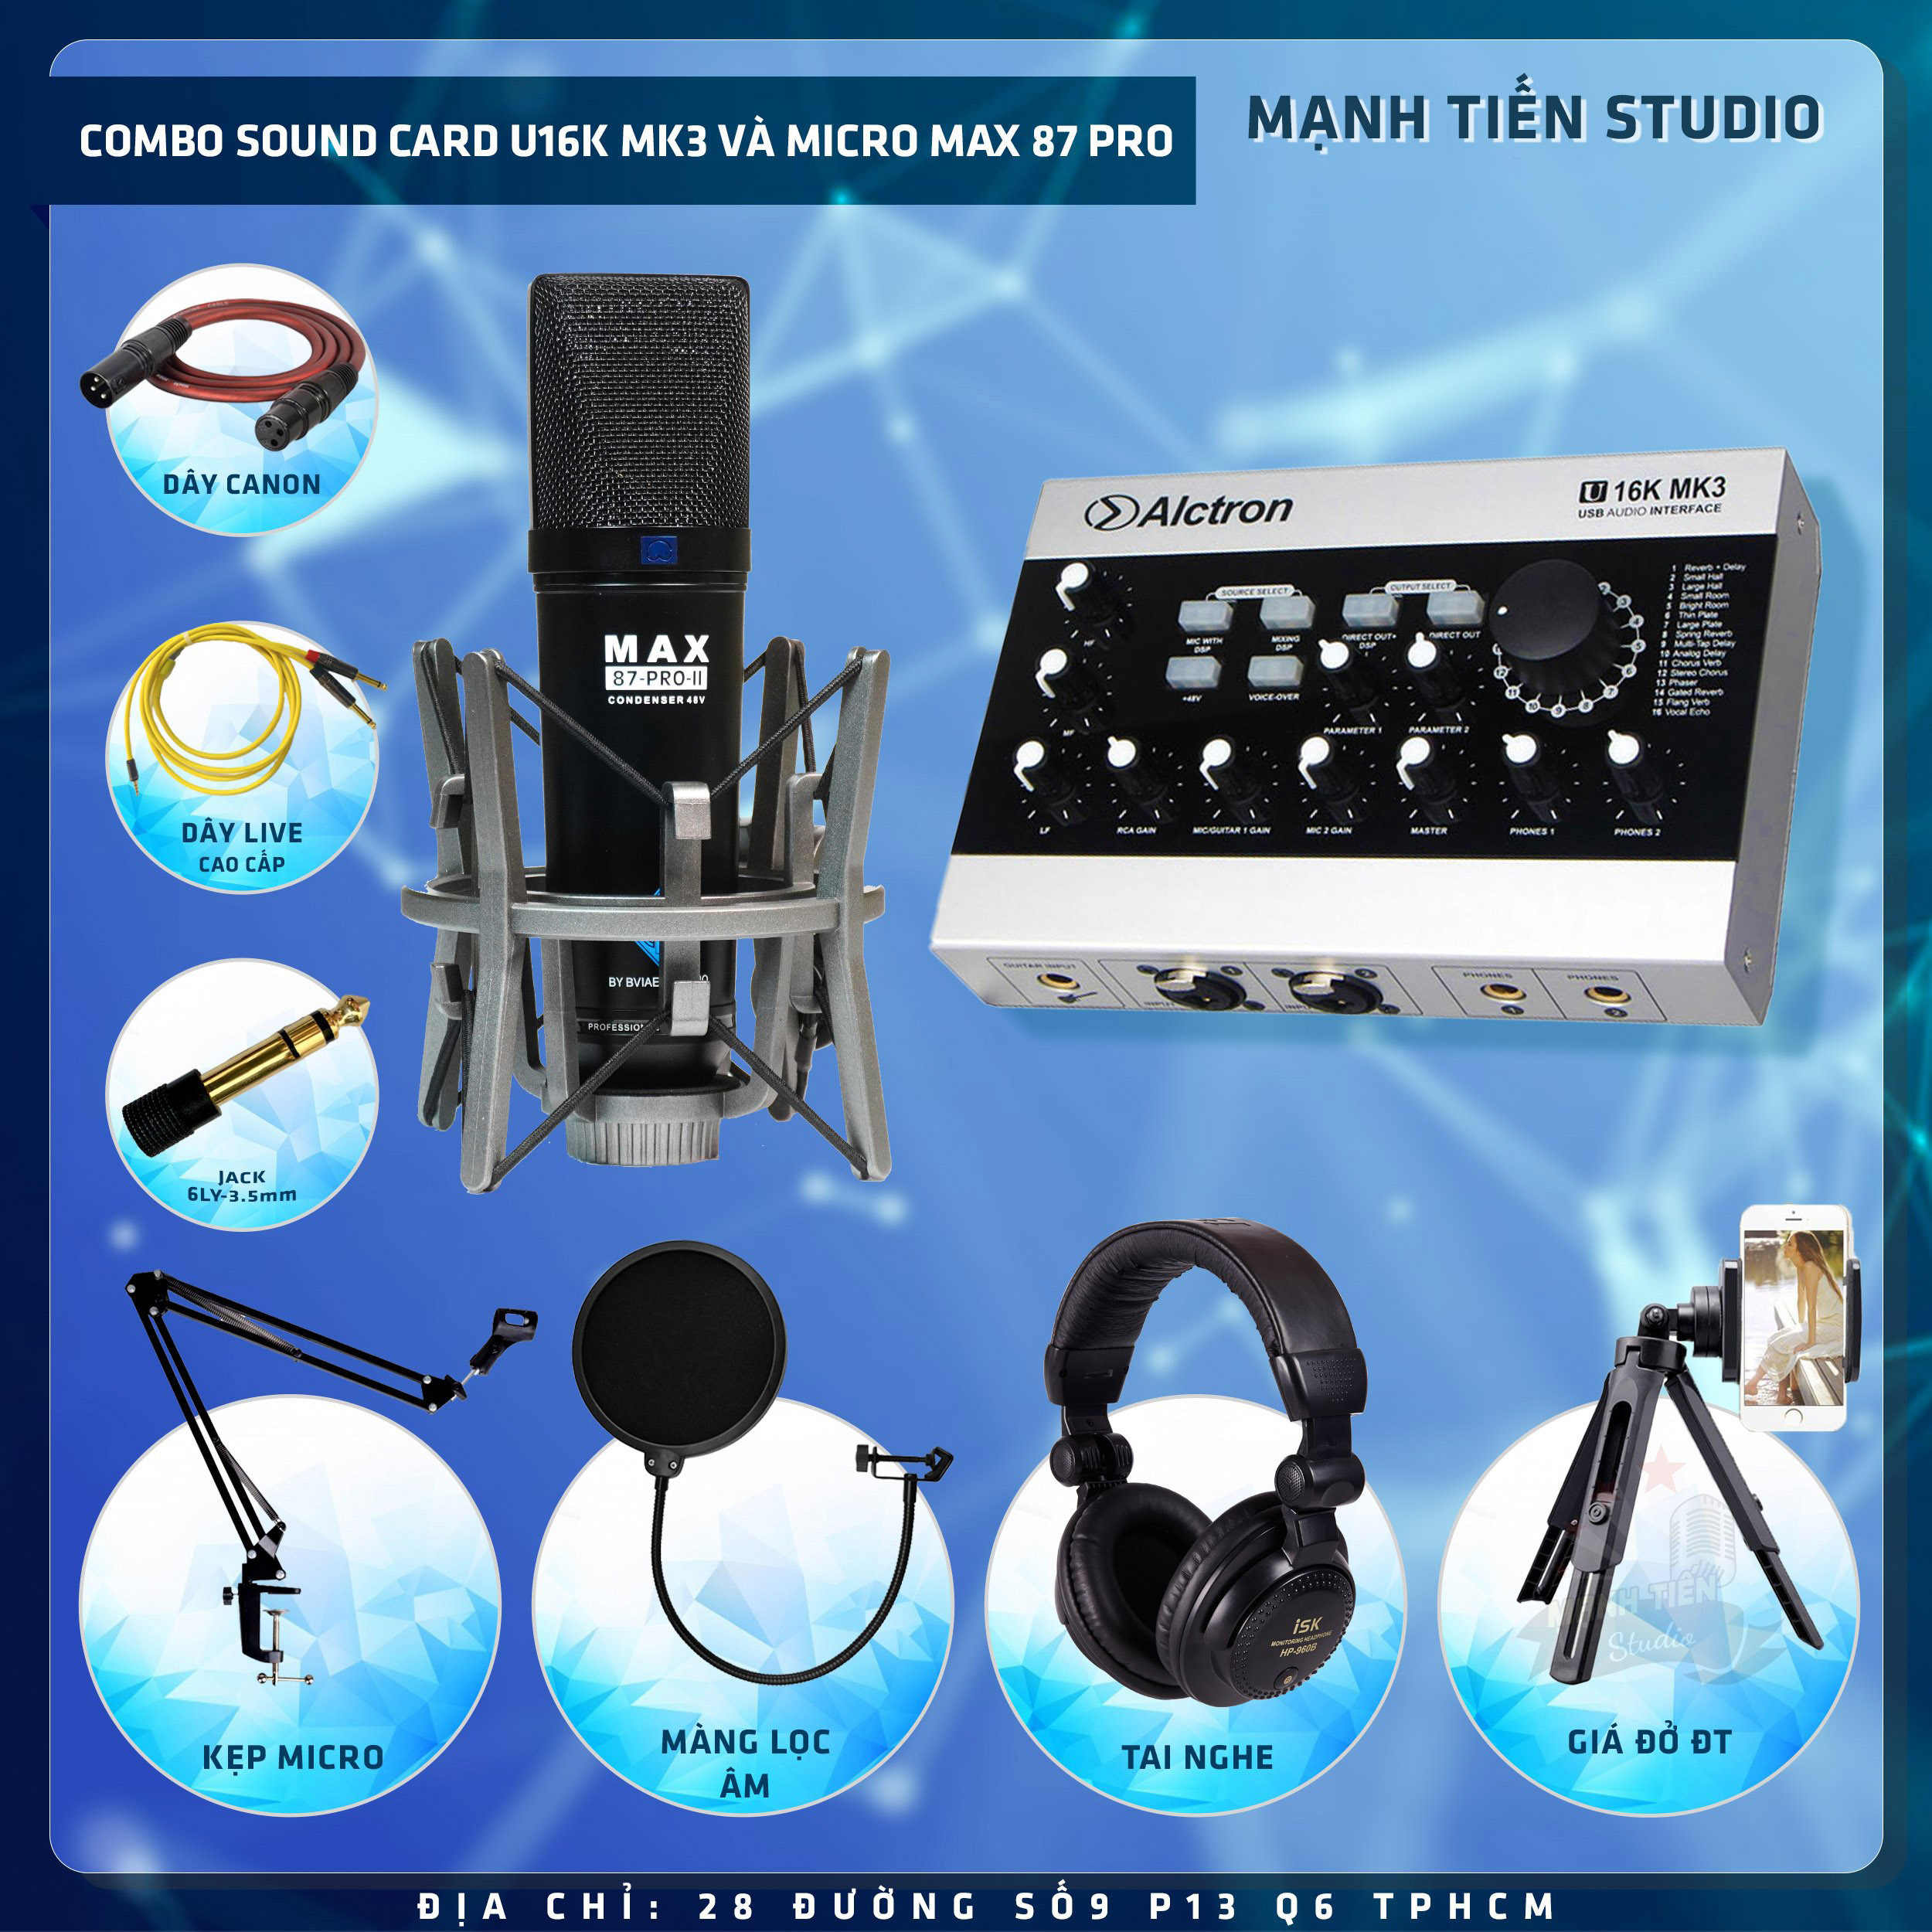 Combo thu âm, livestream Micro Max 87-Pro-II 2022, Sound card Alctron U16K MK3 - Kèm full phụ kiện kẹp micro, màng lọc, tai nghe, giá đỡ ĐT, dây canon, dây livestream - Hỗ trợ thu âm, karaoke online chuyên nghiệp - Hàng nhập khẩu